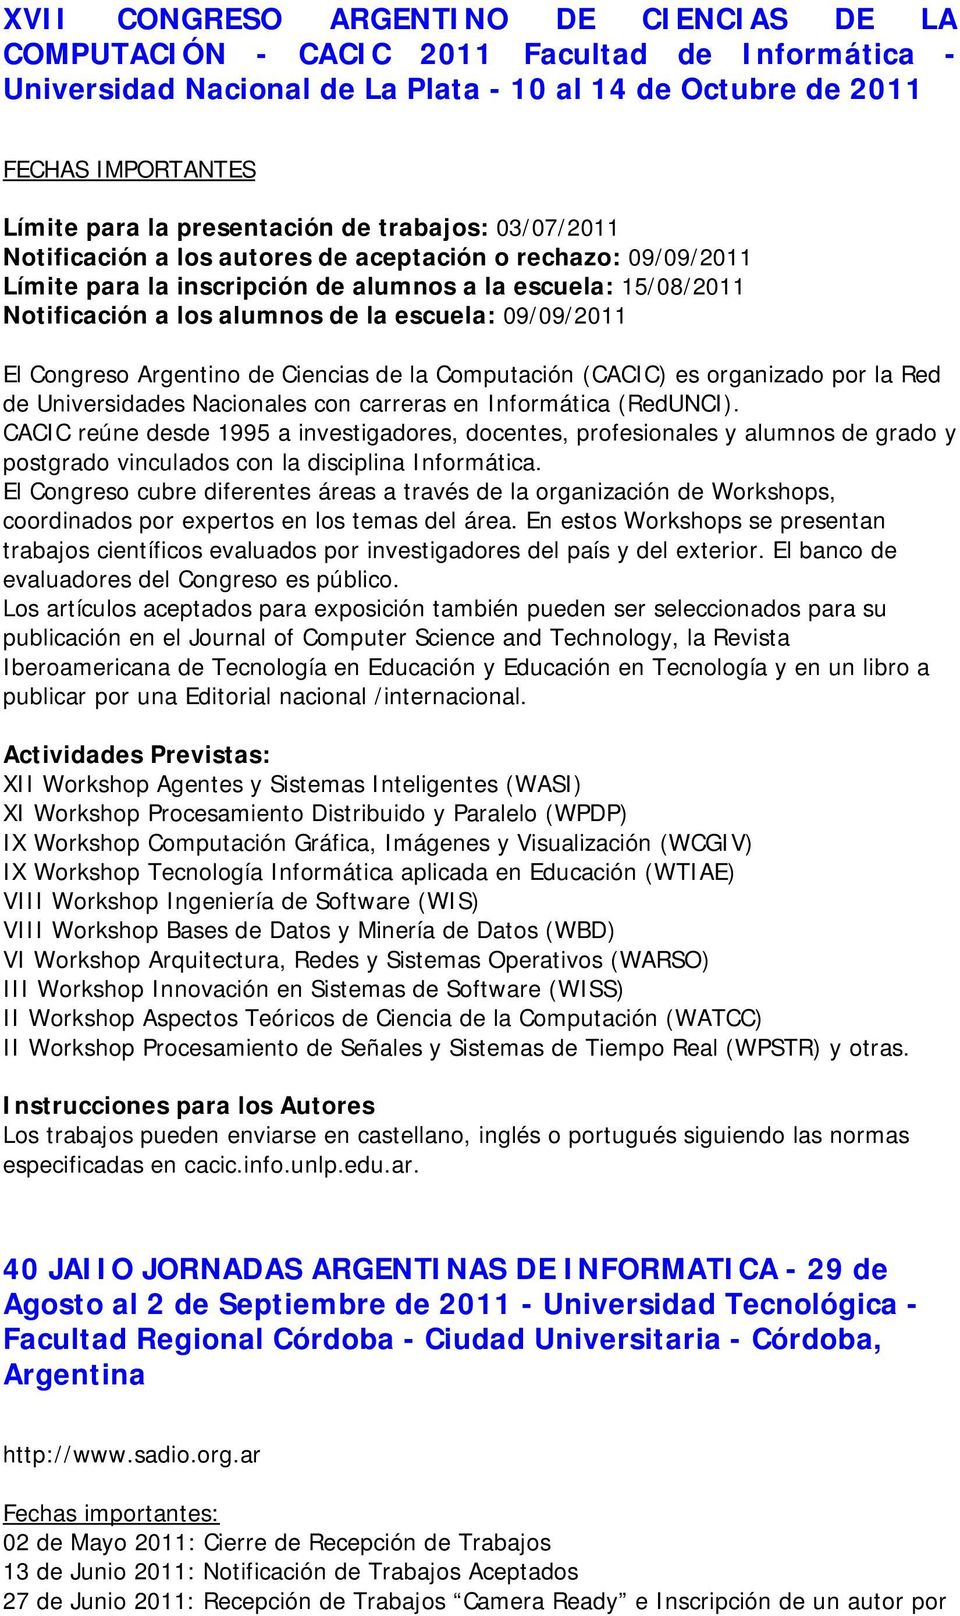 escuela: 09/09/2011 El Congreso Argentino de Ciencias de la Computación (CACIC) es organizado por la Red de Universidades Nacionales con carreras en Informática (RedUNCI).